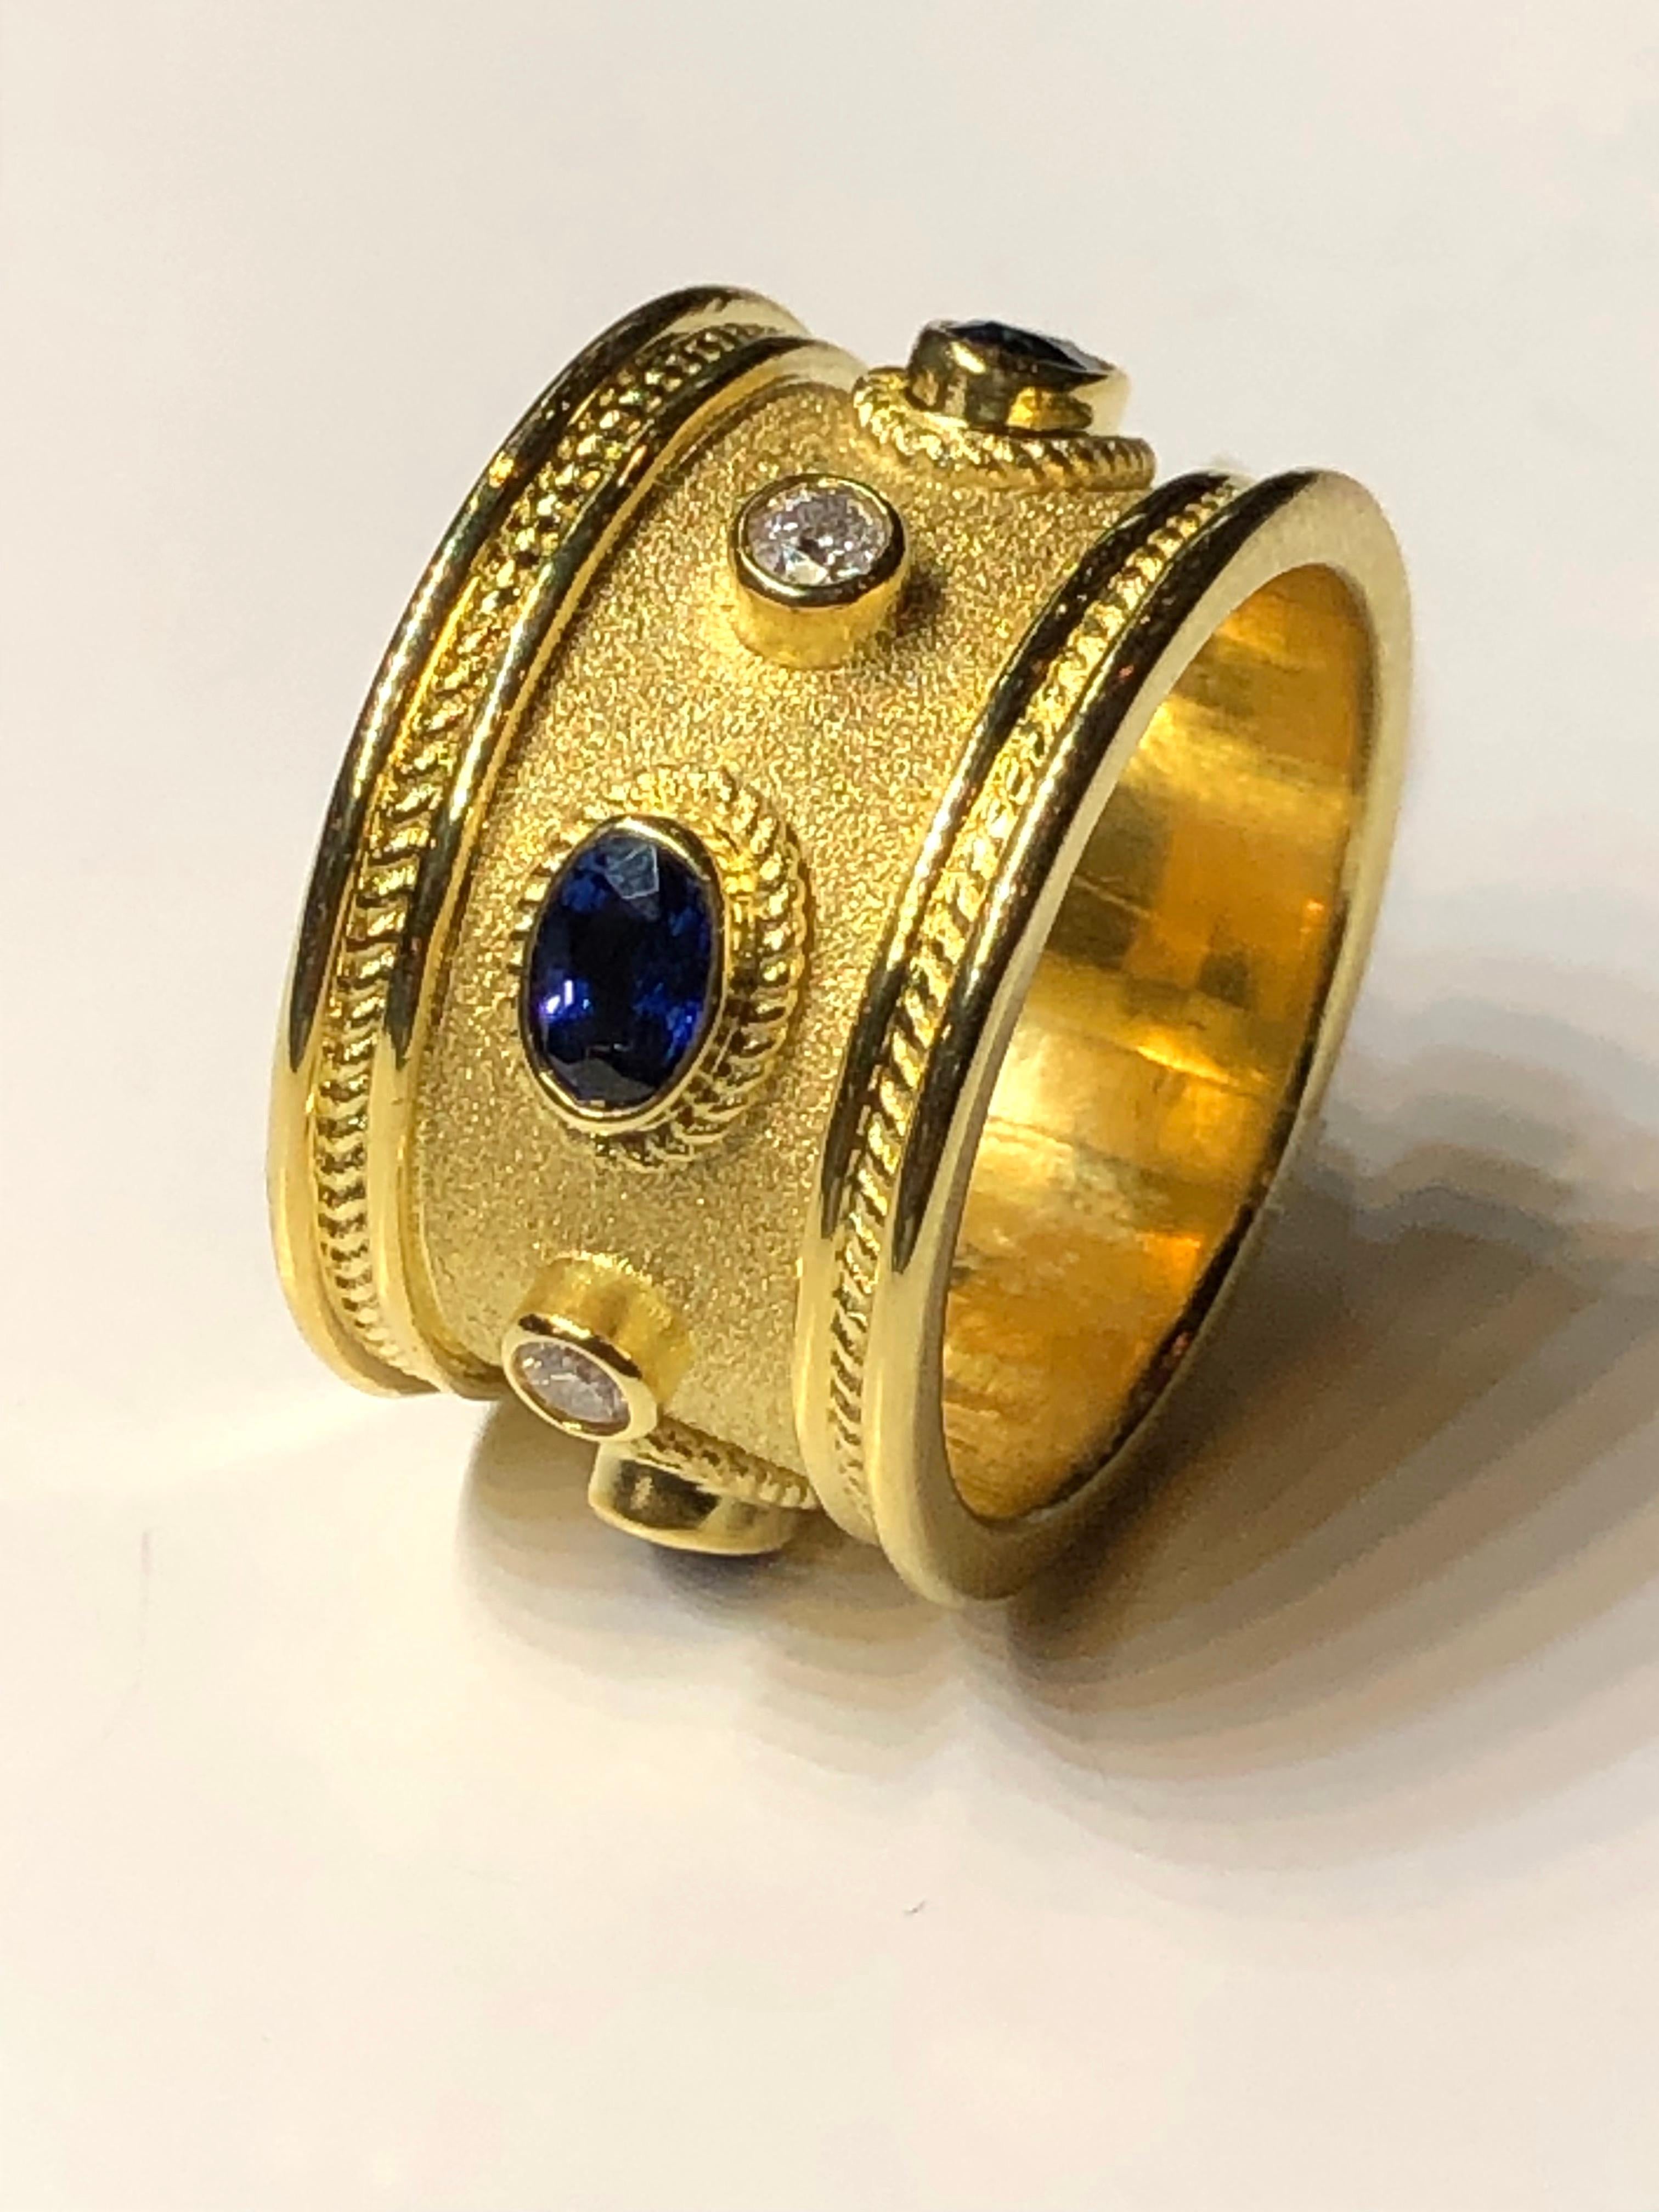 Cette bague en or jaune 18 carats du designer S.Georgios est entièrement réalisée à la main selon le savoir-faire byzantin - granulation et est finie avec un fond de velours unique. Cette magnifique bague comporte 4 diamants blancs de taille